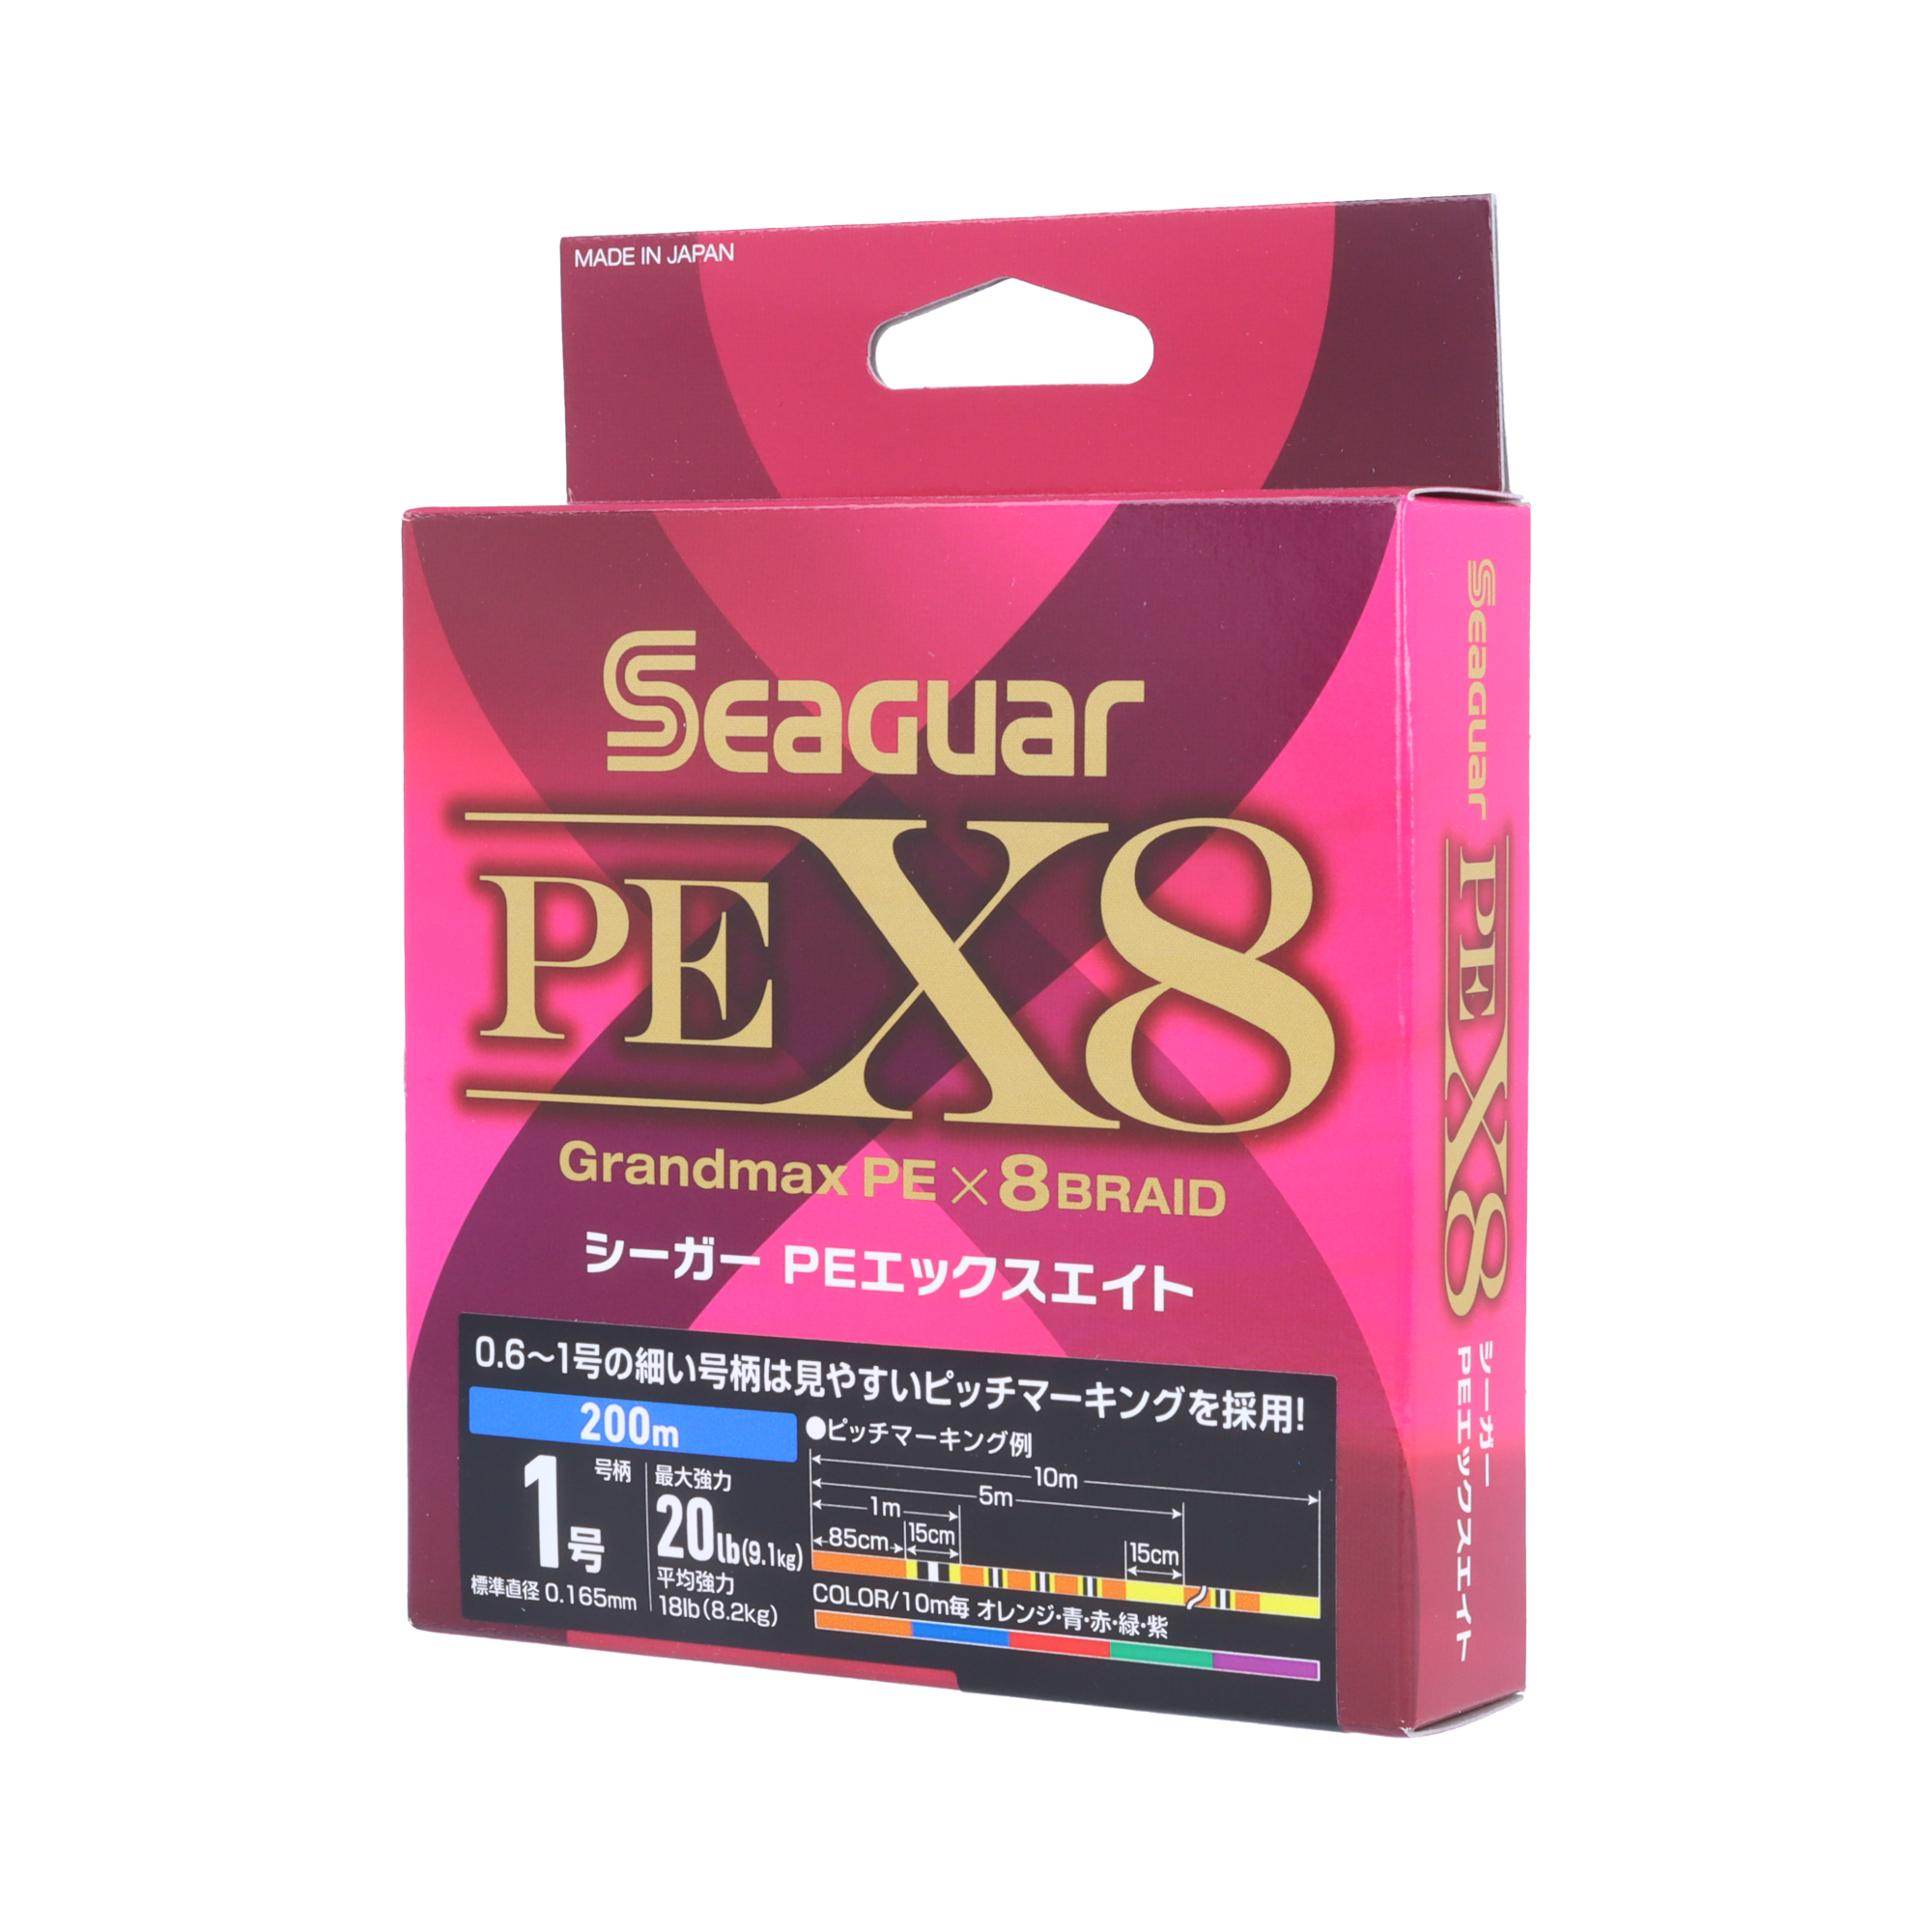 Seaguar シーガー PE X8 2.5号/38.0lb/5色/200m